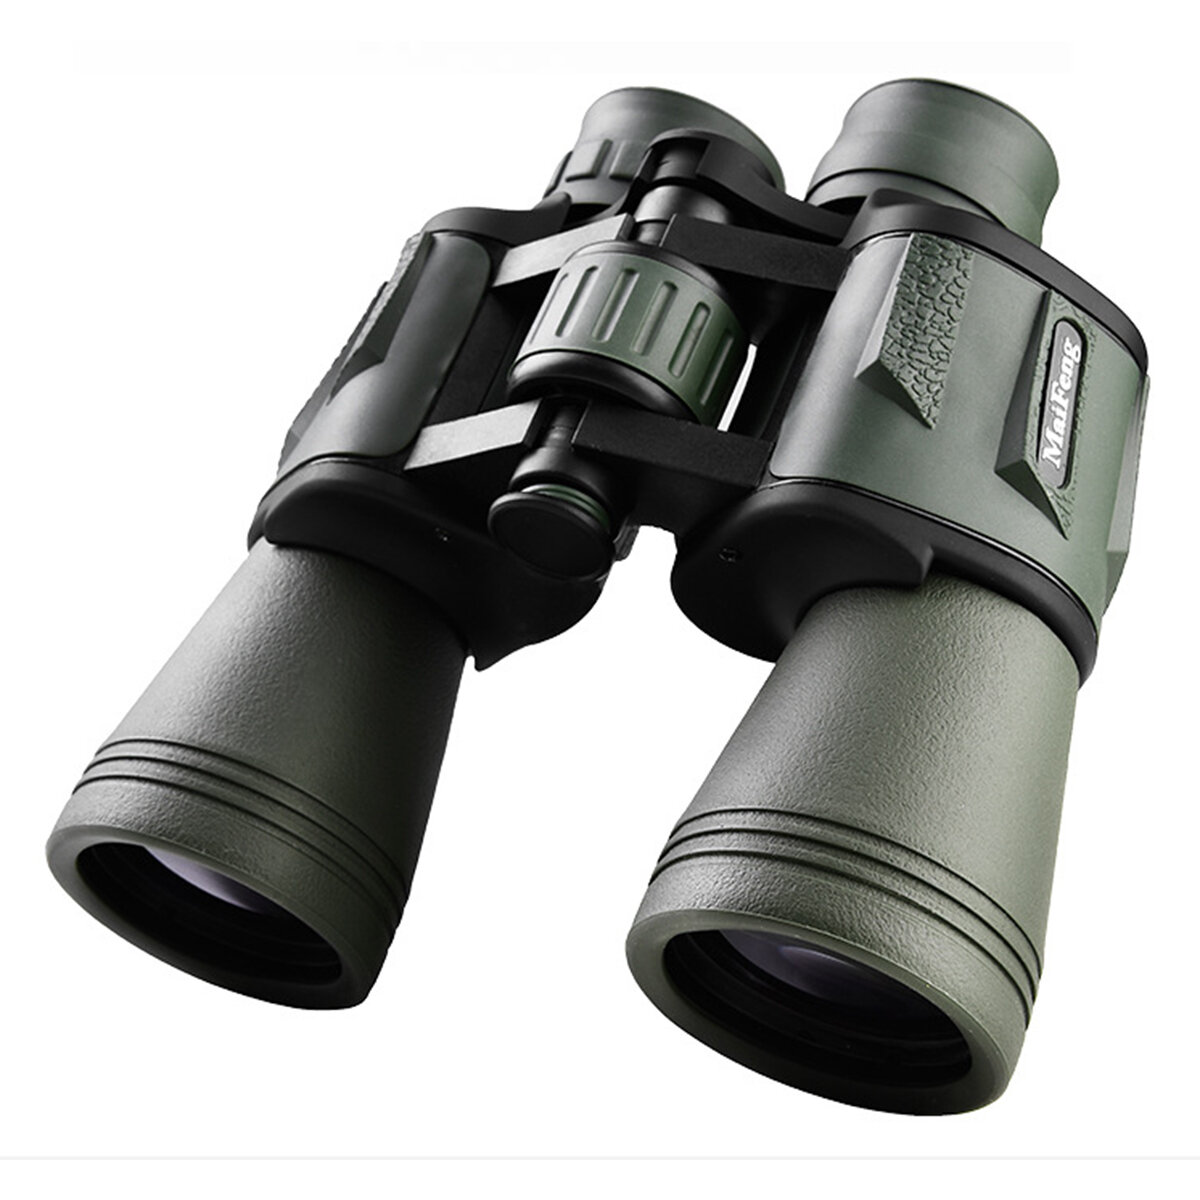 Kính thiên văn chuyên nghiệp cao cấp 20X50 có phạm vi xa với kính đôi độ phân giải cao cho tầm nhìn ban đêm ngoài trời, săn bắn, cắm trại và du lịch.